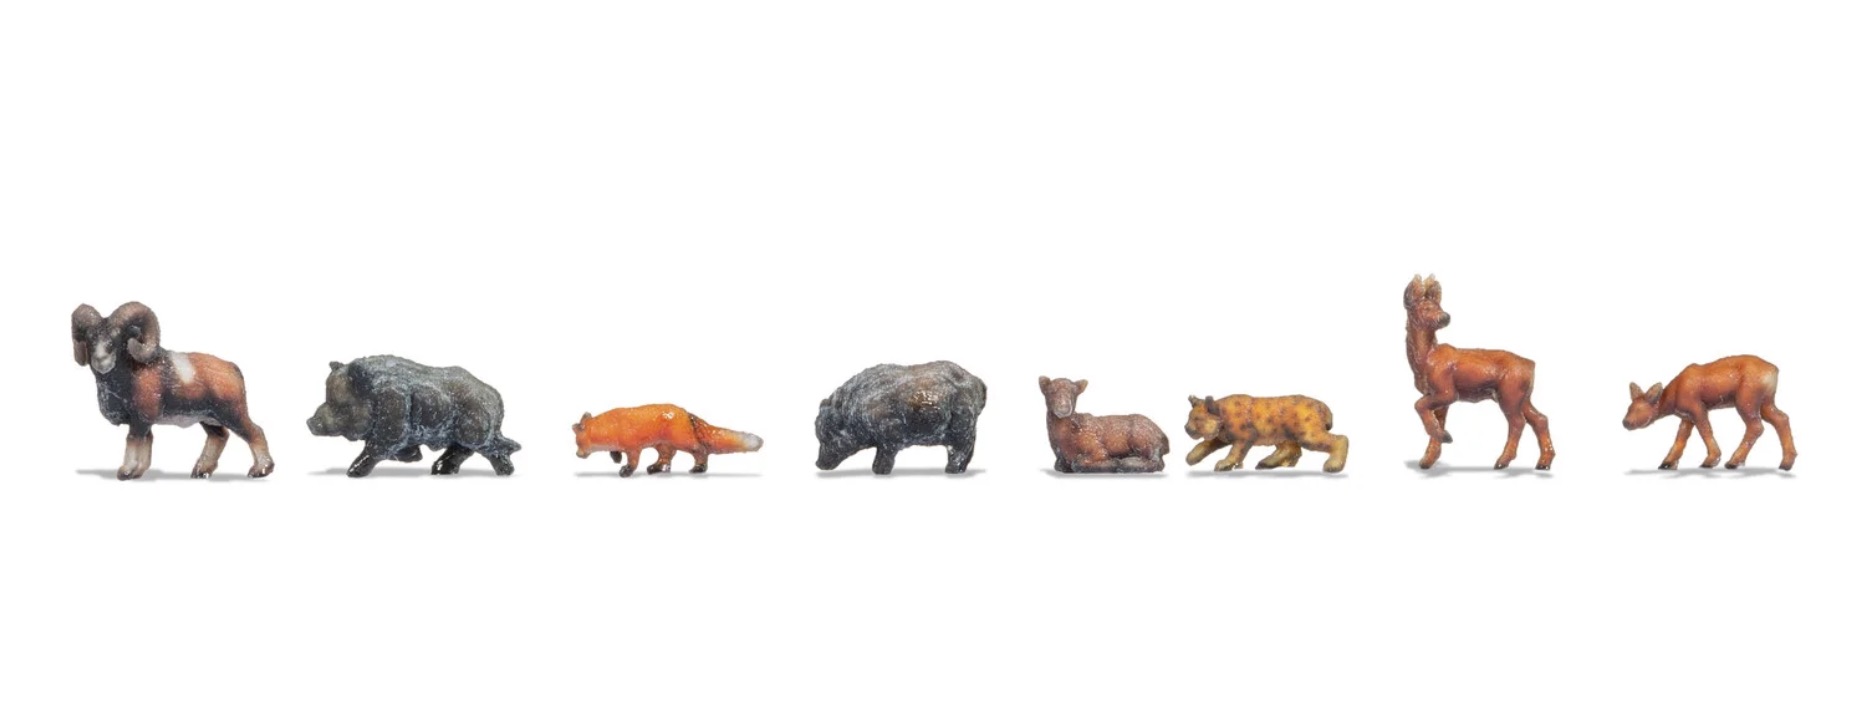 Z Scale - Noch - 44543 - Figures, Animals, Forest - Animals